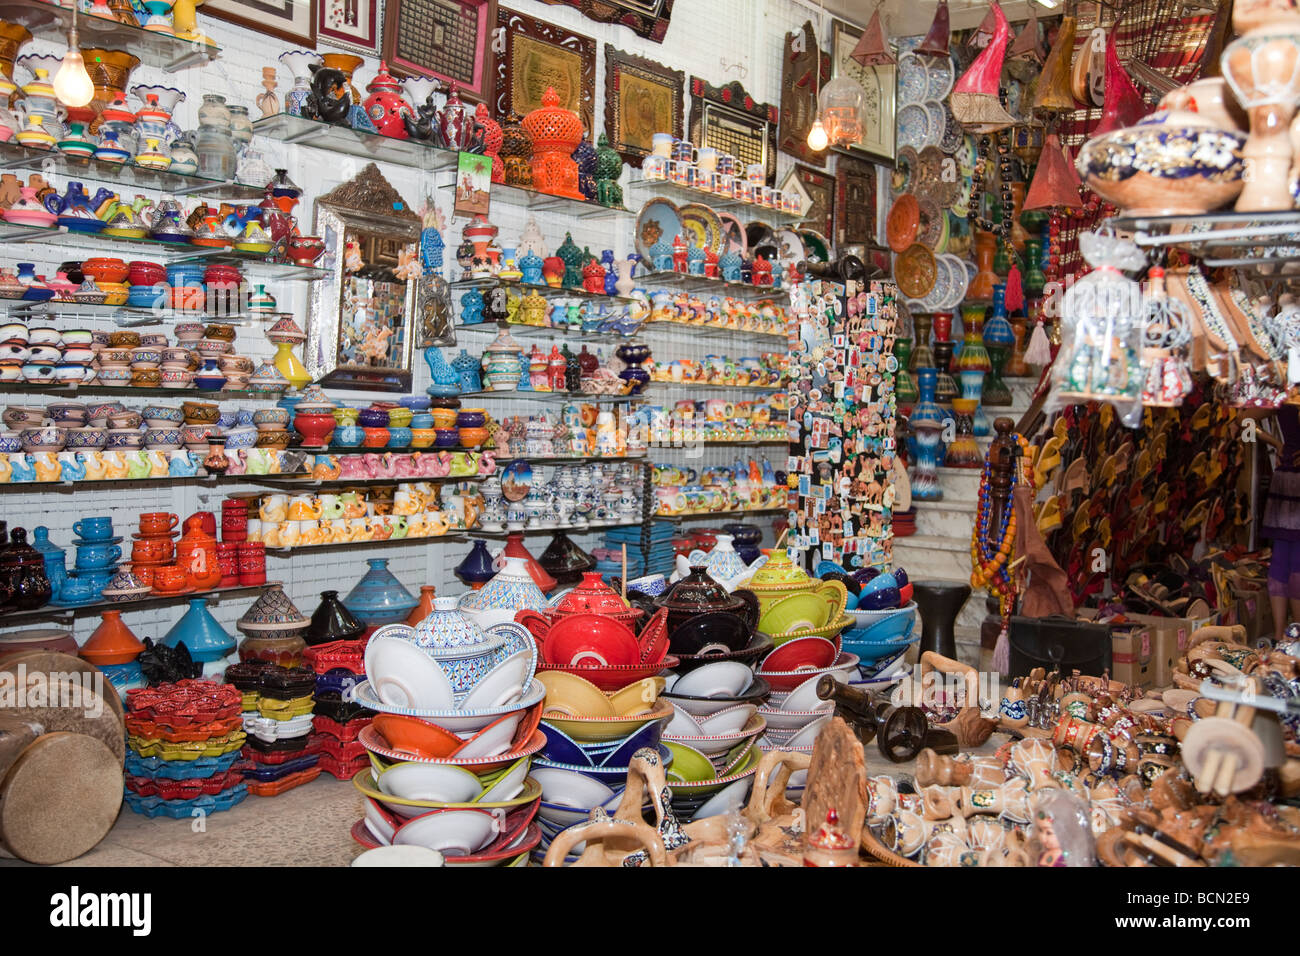 Classé patrimoine mondial de l'UNESCO, la Médina de Tunis abrite des boutiques proposant toutes sortes de souvenirs et d'artisanat. Banque D'Images